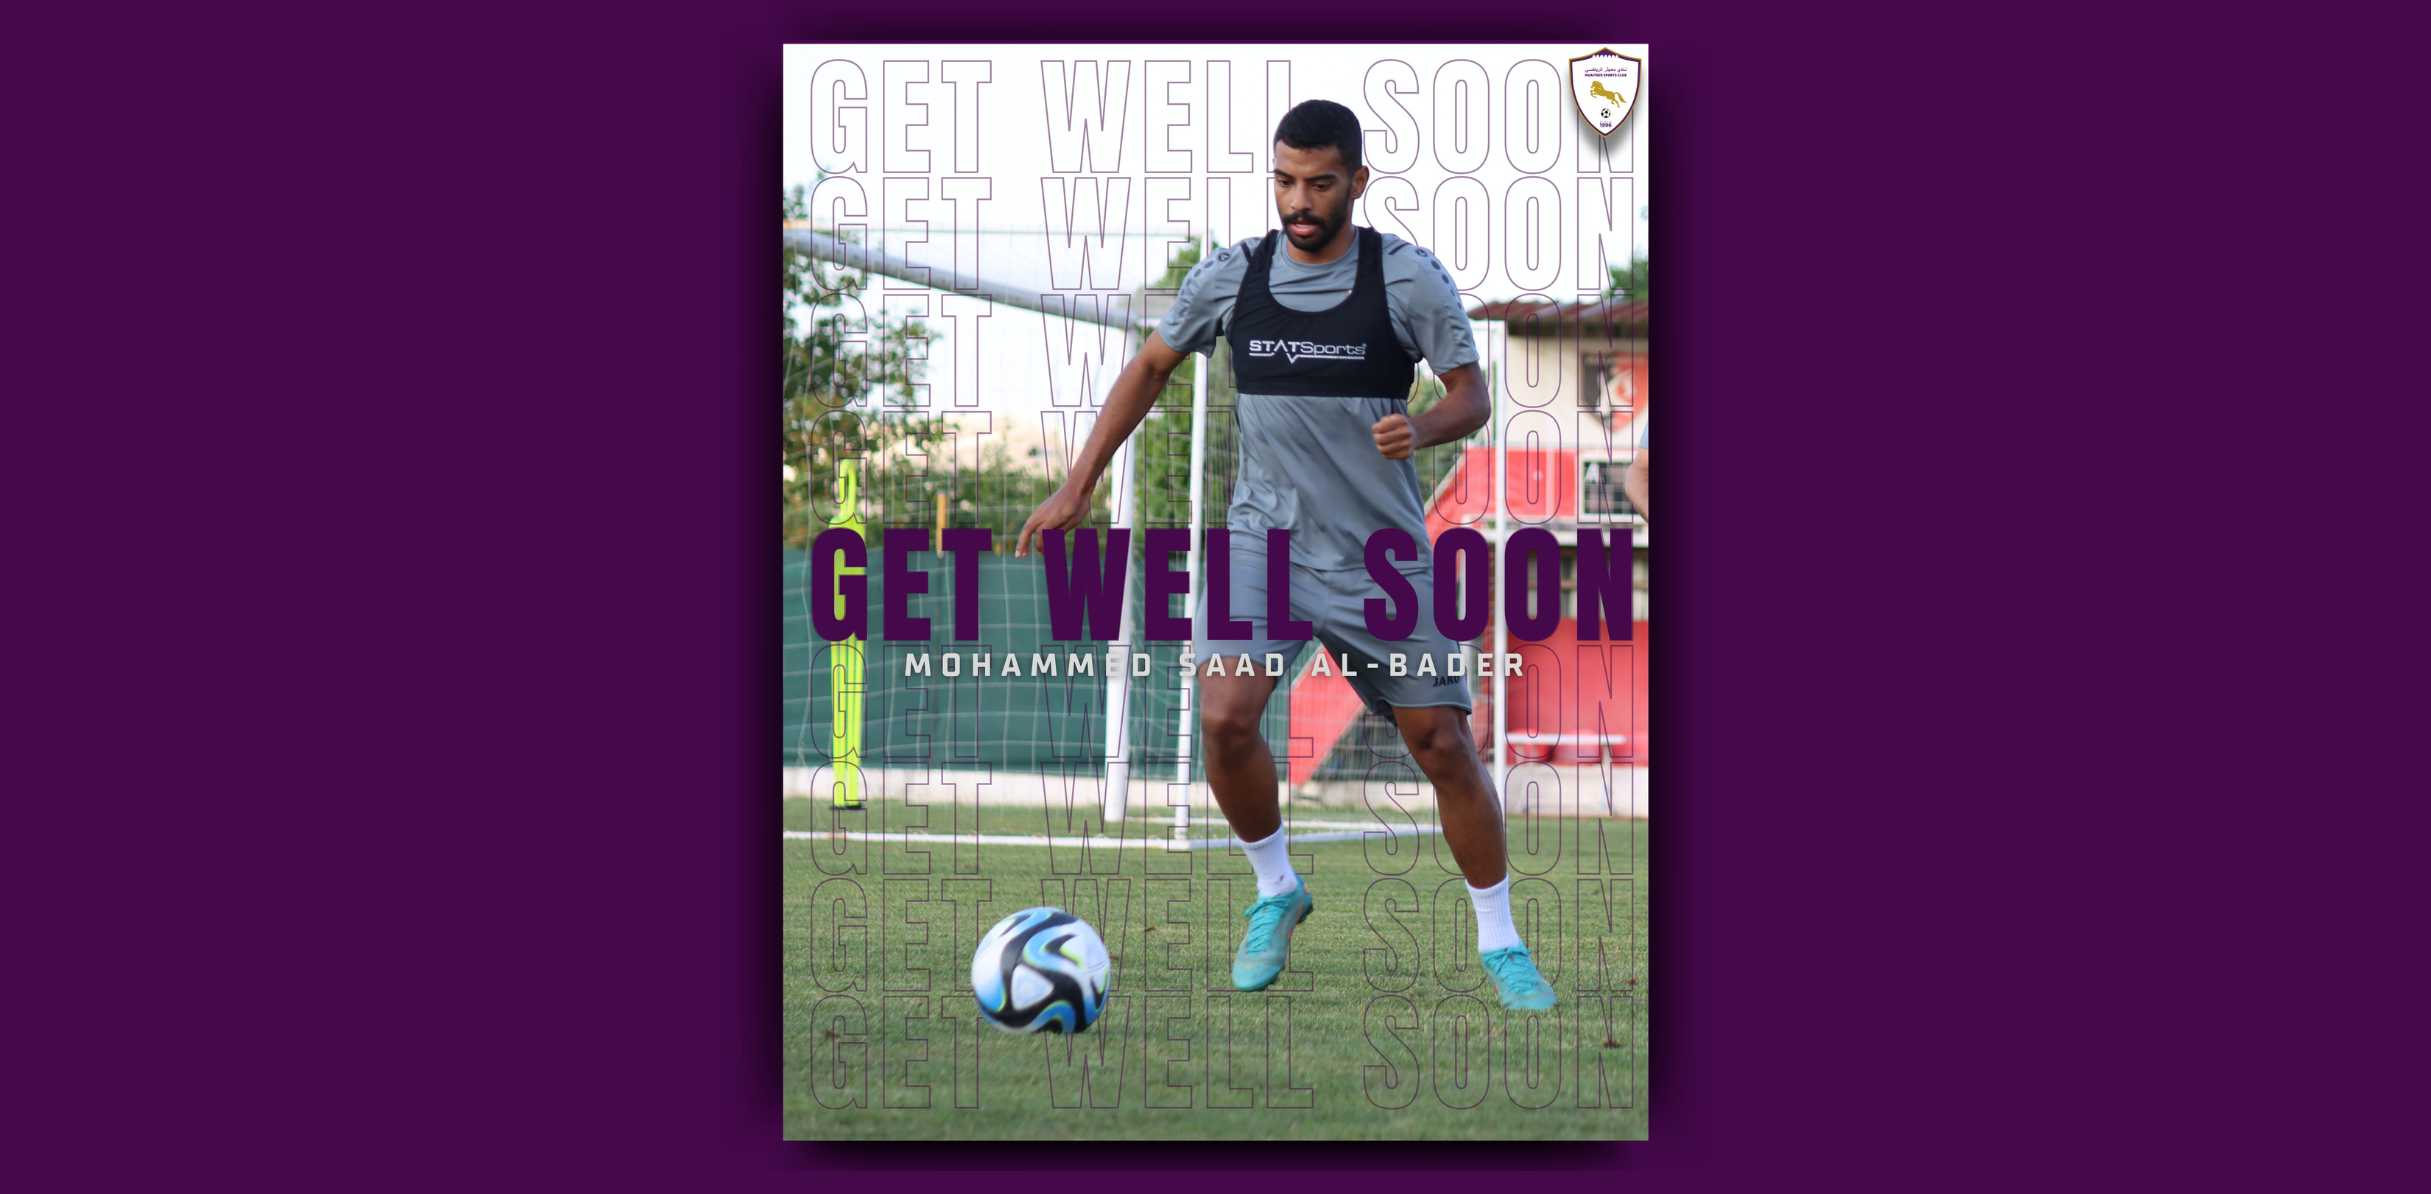 Our player, Mohamed Saad Al-Badr, was injured at the shoulder level